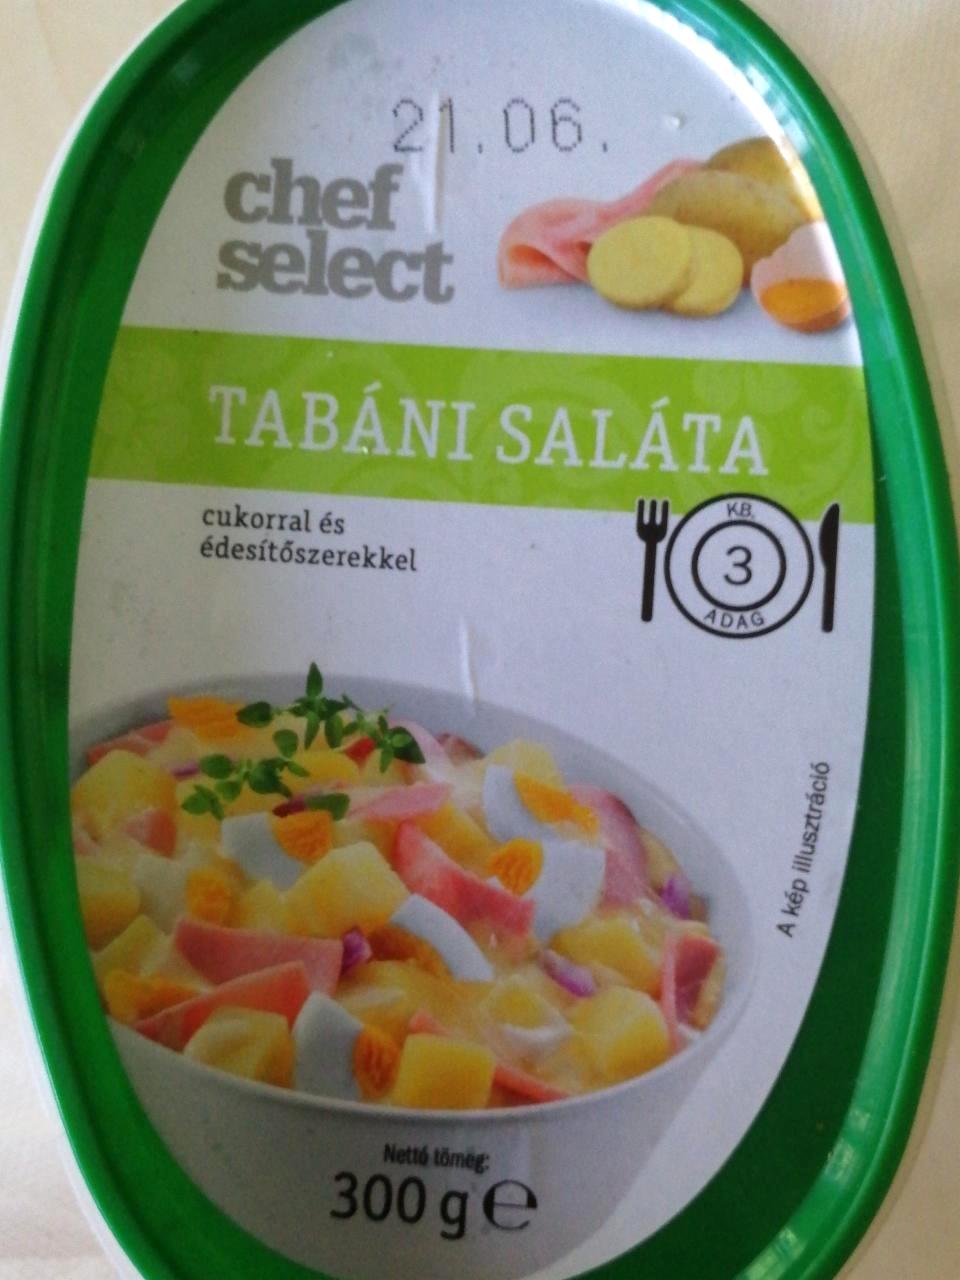 Tabáni saláta Chef select - kalória, kJ és tápértékek